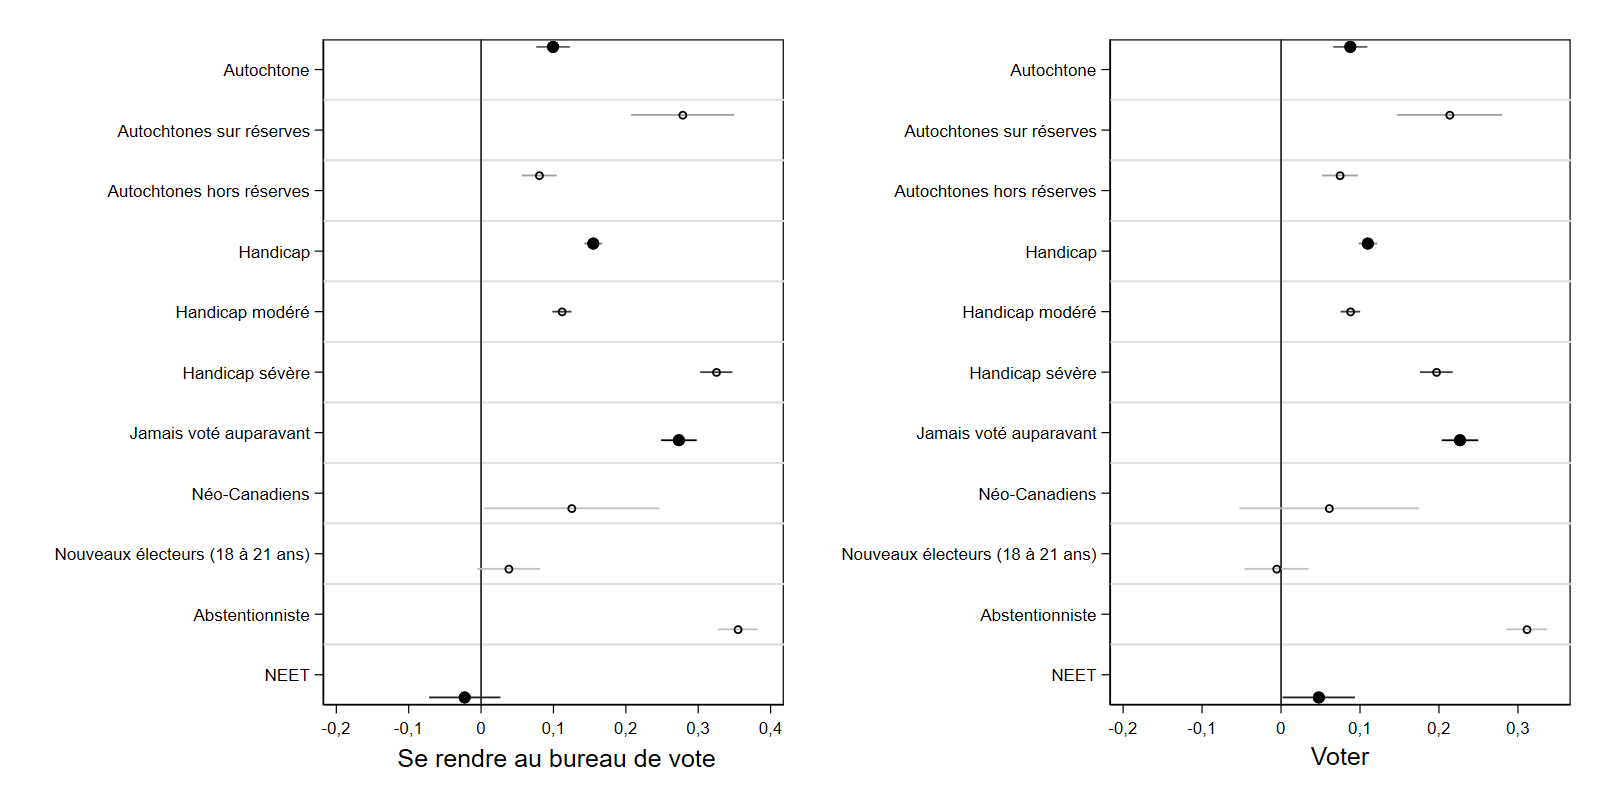 Figure 4.4. Mesure dans laquelle les efforts perçus sont supérieurs (ou inférieurs) dans les différents groupes, en tenant compte des caractéristiques sociodémographiques : se rendre au bureau de vote et voter